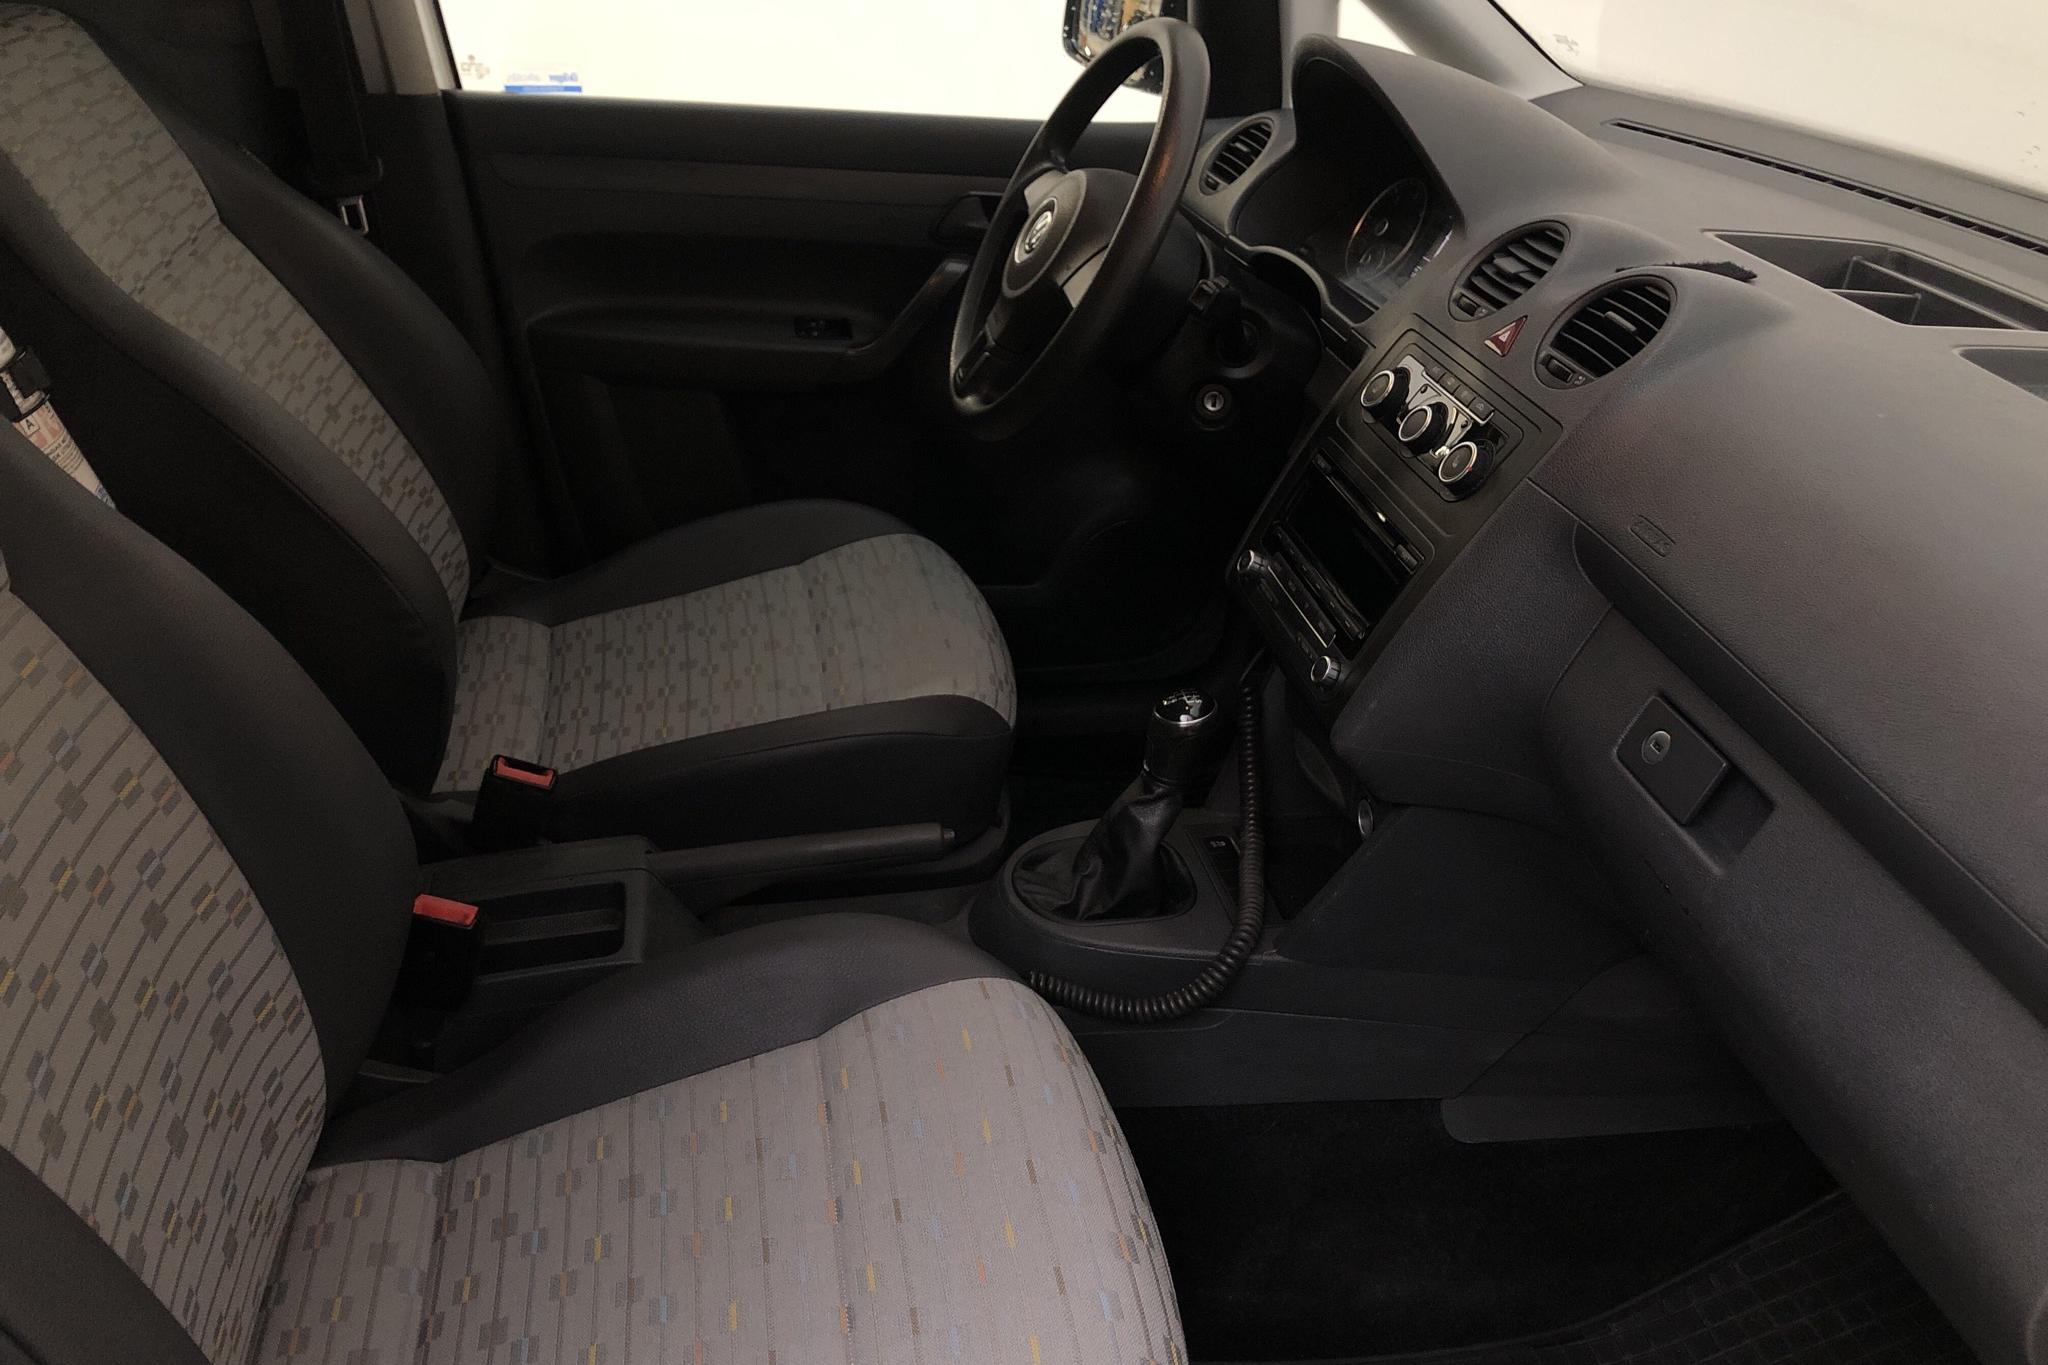 VW Caddy 1.6 TDI Maxi Skåp (102hk) - 14 934 mil - Manuell - vit - 2014